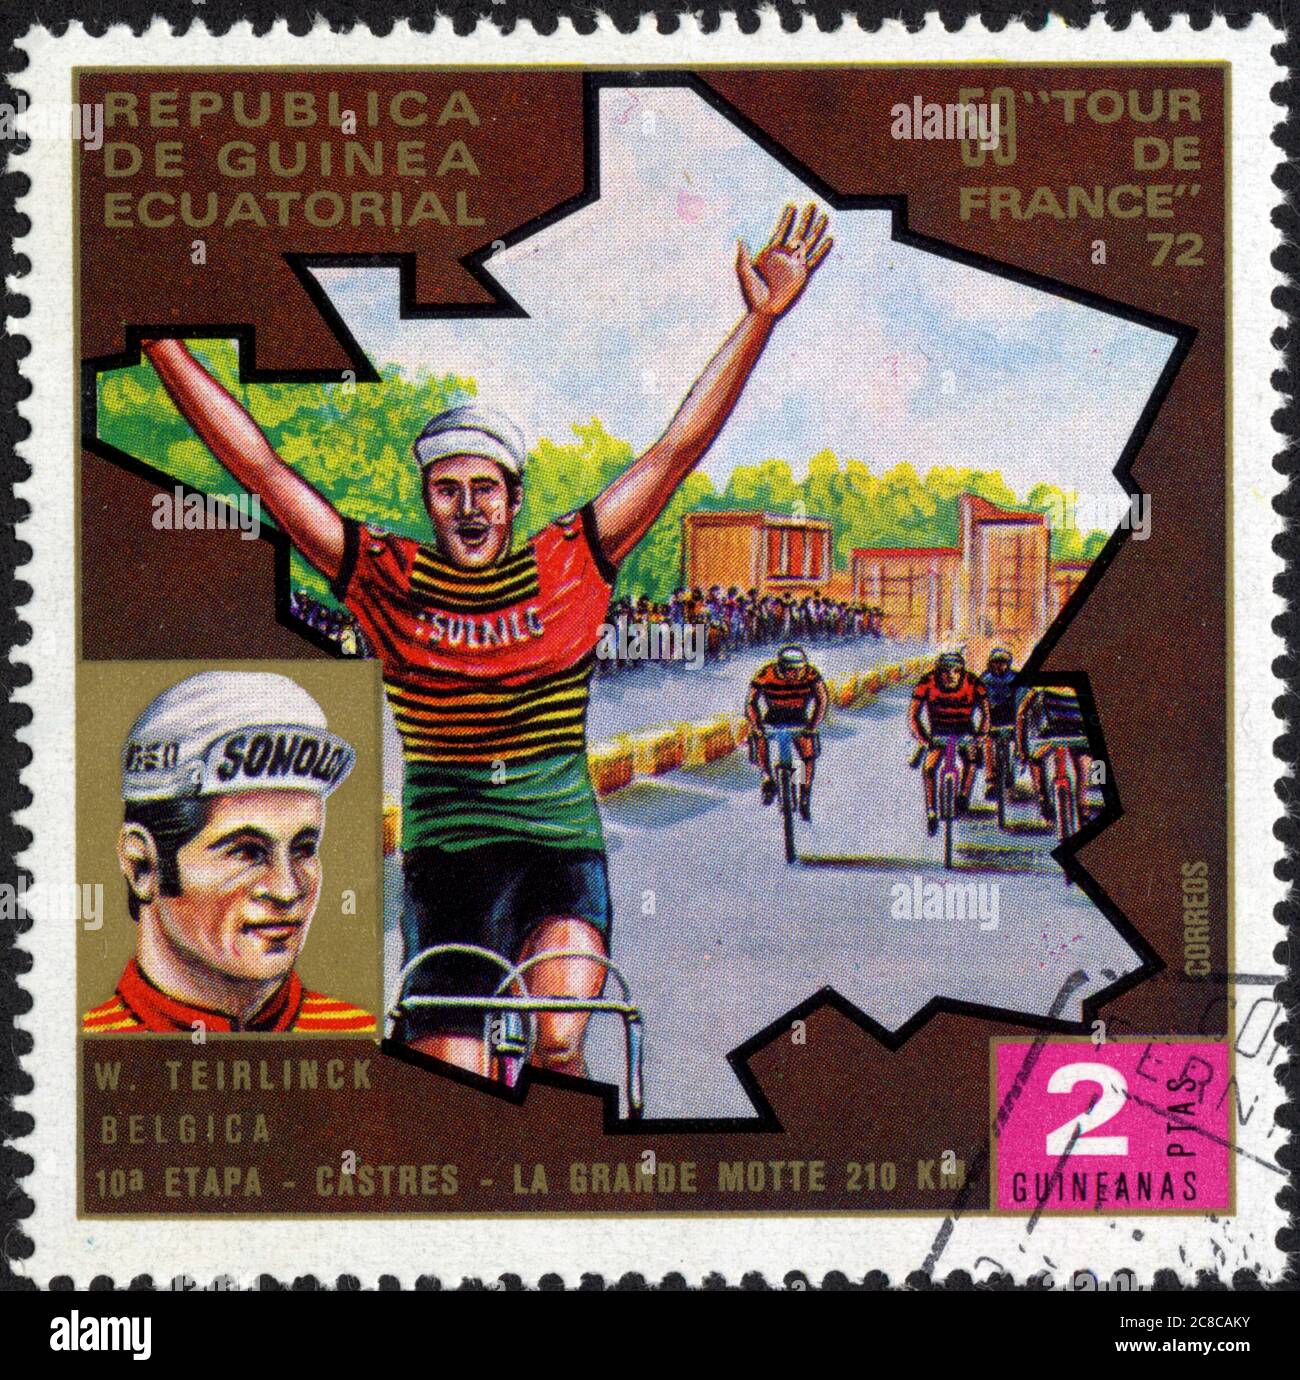 Republica de Guinea Ecuatorial. 59 Tour de France 72. W. Teirlinck. Belgica. 10a etapa. Castres-  La Grande Motte 210 km. 2 Ptas guineanas. Correos Stock Photo